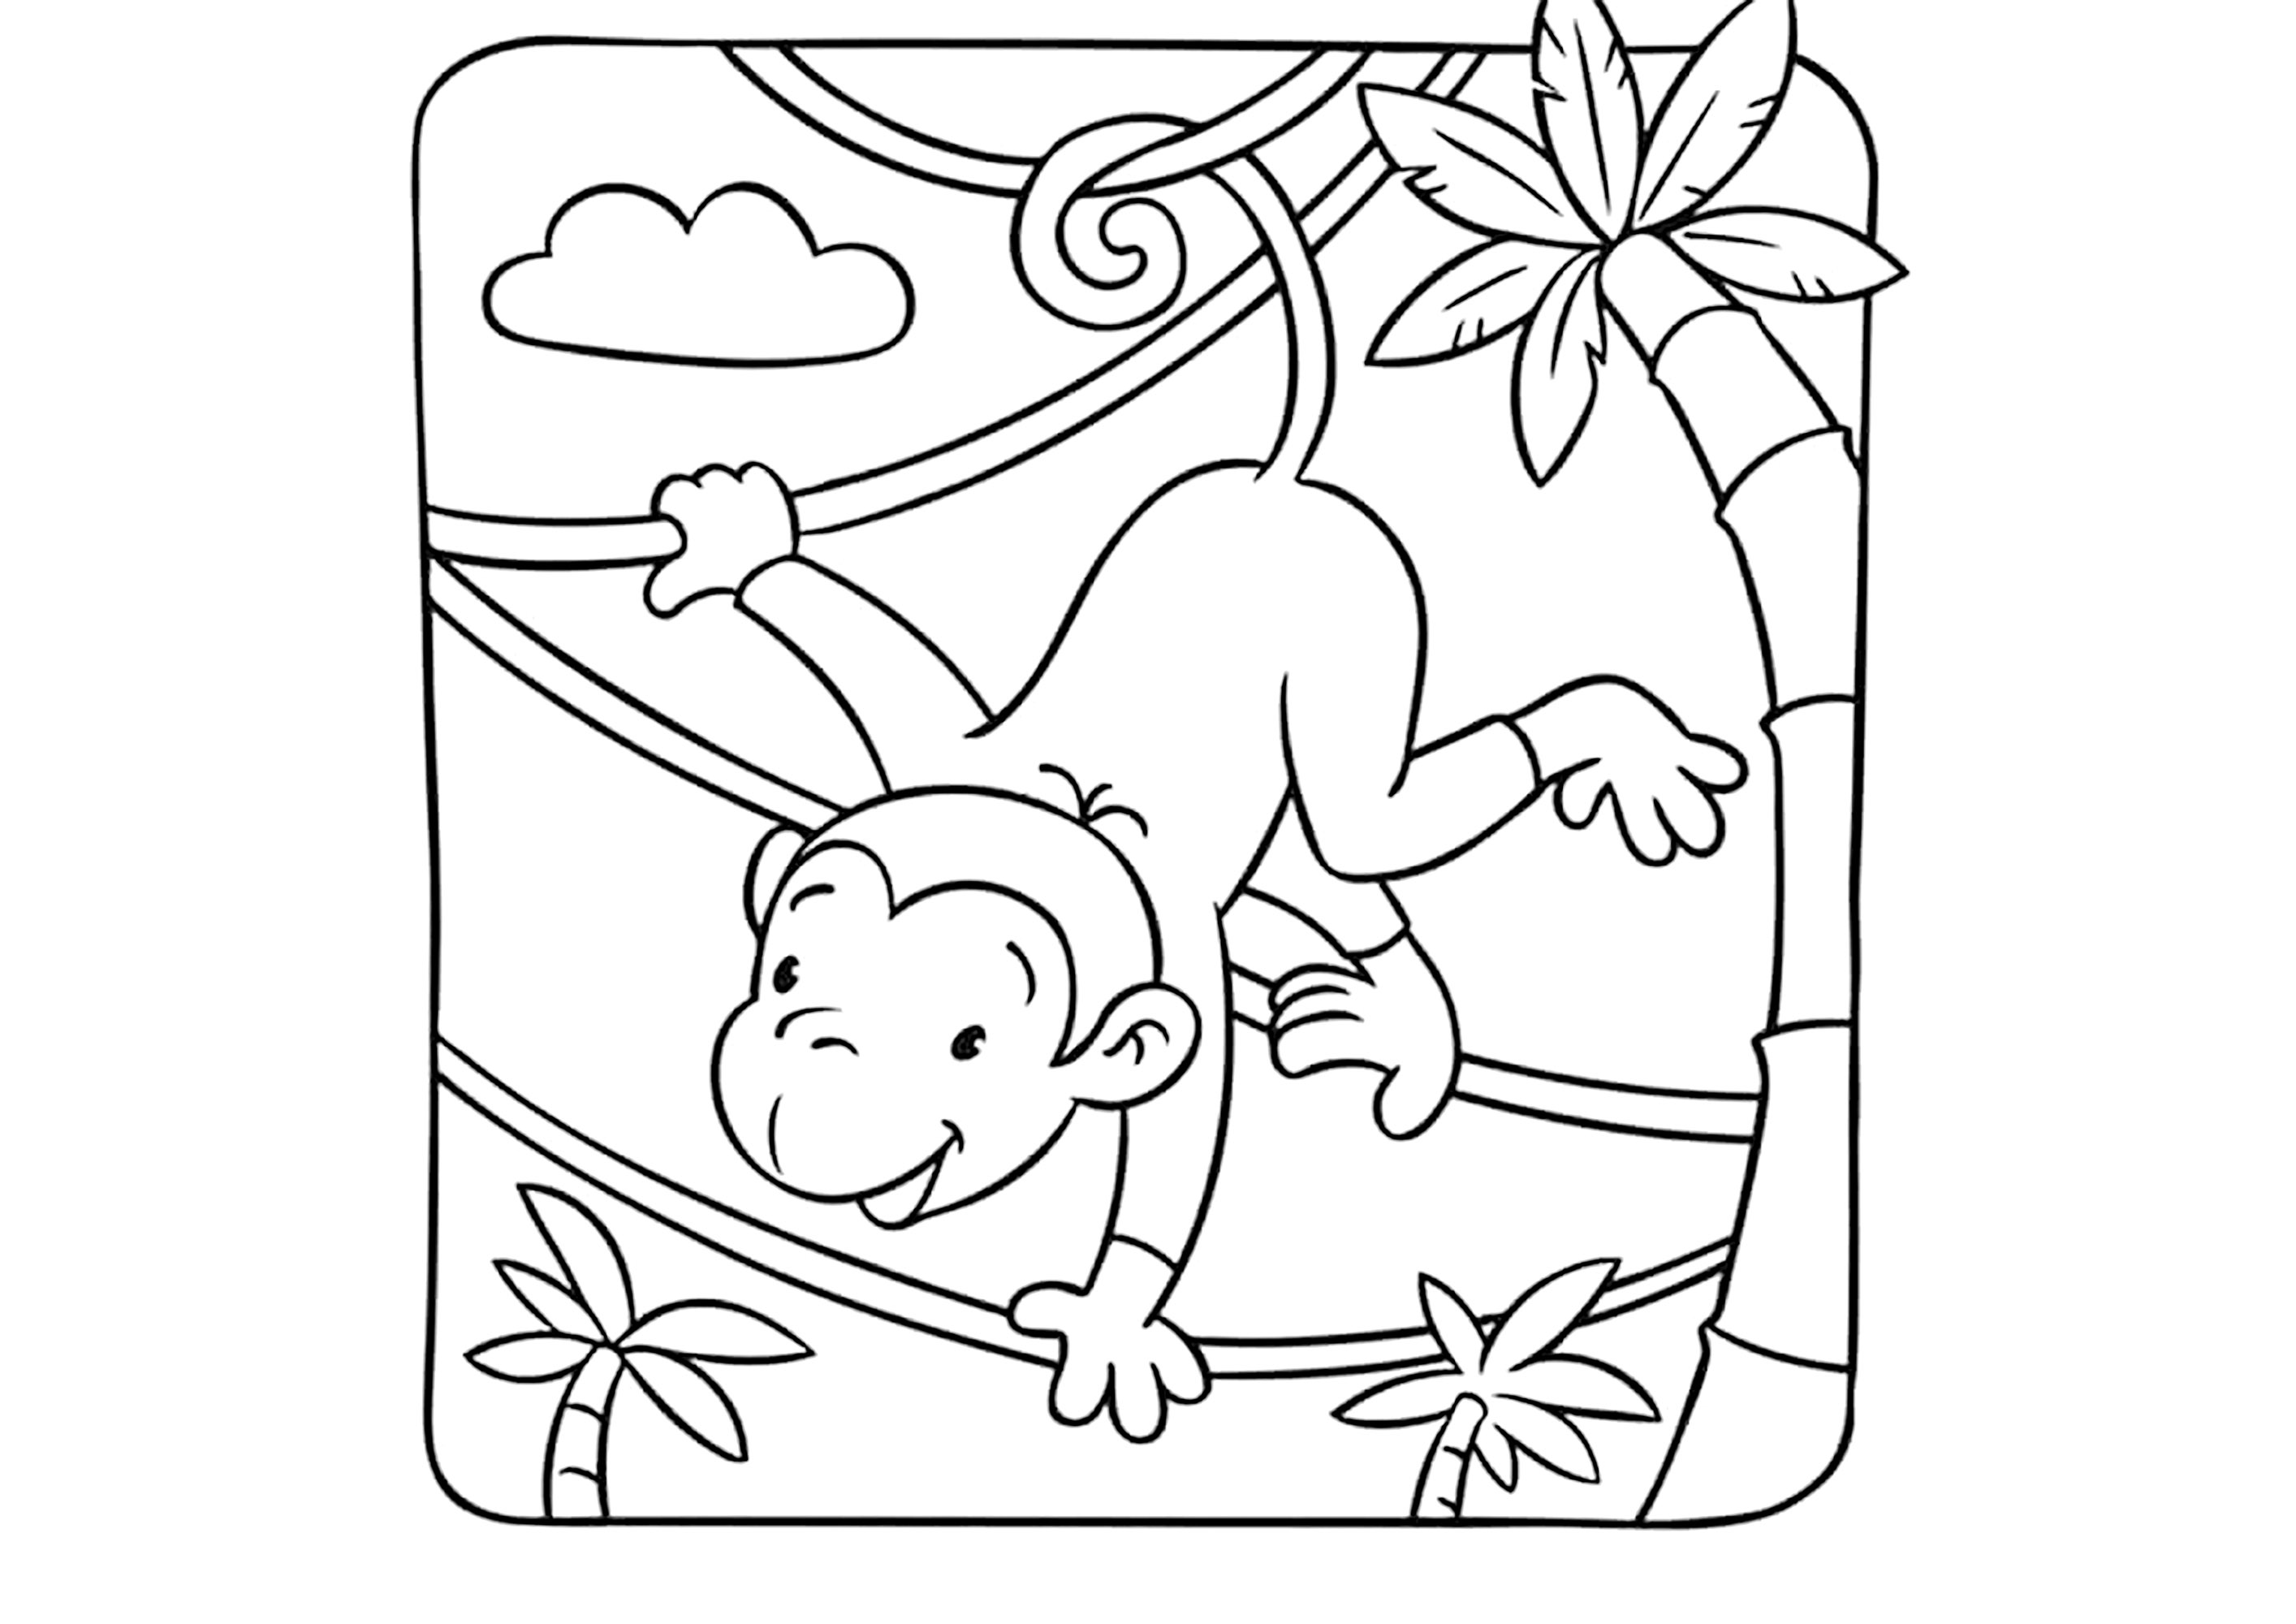 Macaco a baloiçar de cipó em cipó